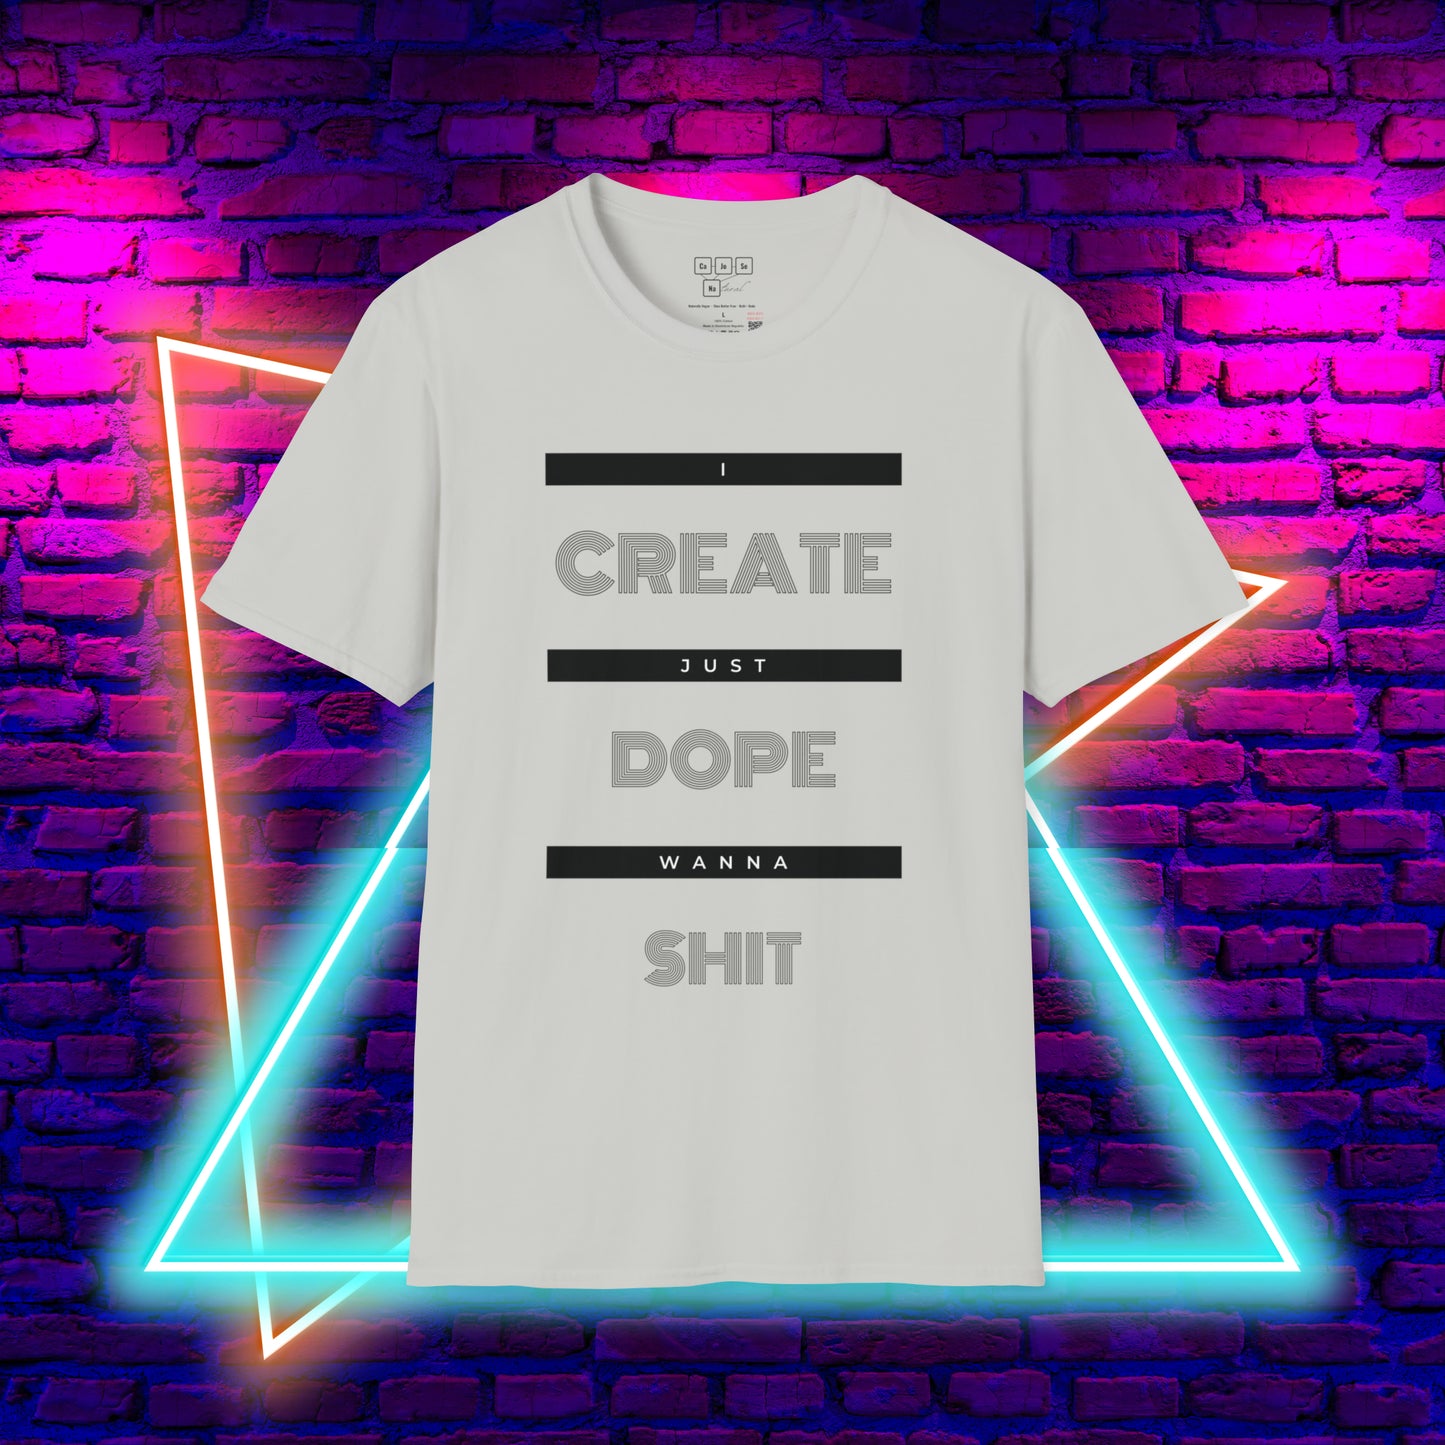 Create Dope $h!+ Tee